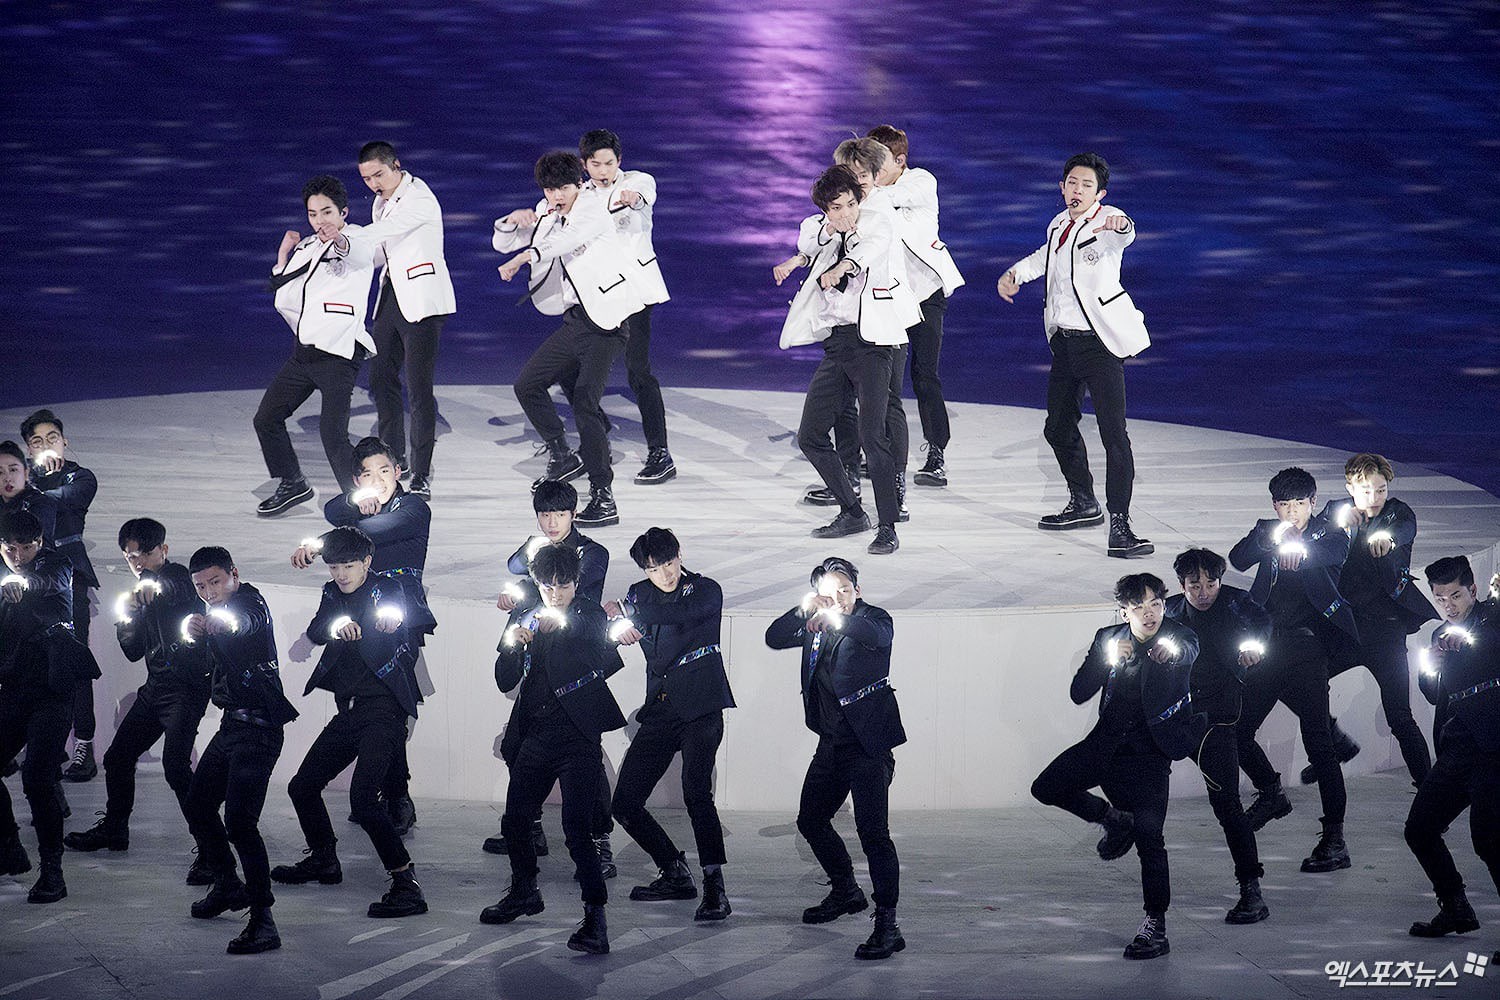 Sân khấu bế mạc Thế vận hội: EXO bị nghi hát nhép, CL bị chê như mụ phù thủy, netizen gọi tên PSY và BTS - Ảnh 6.